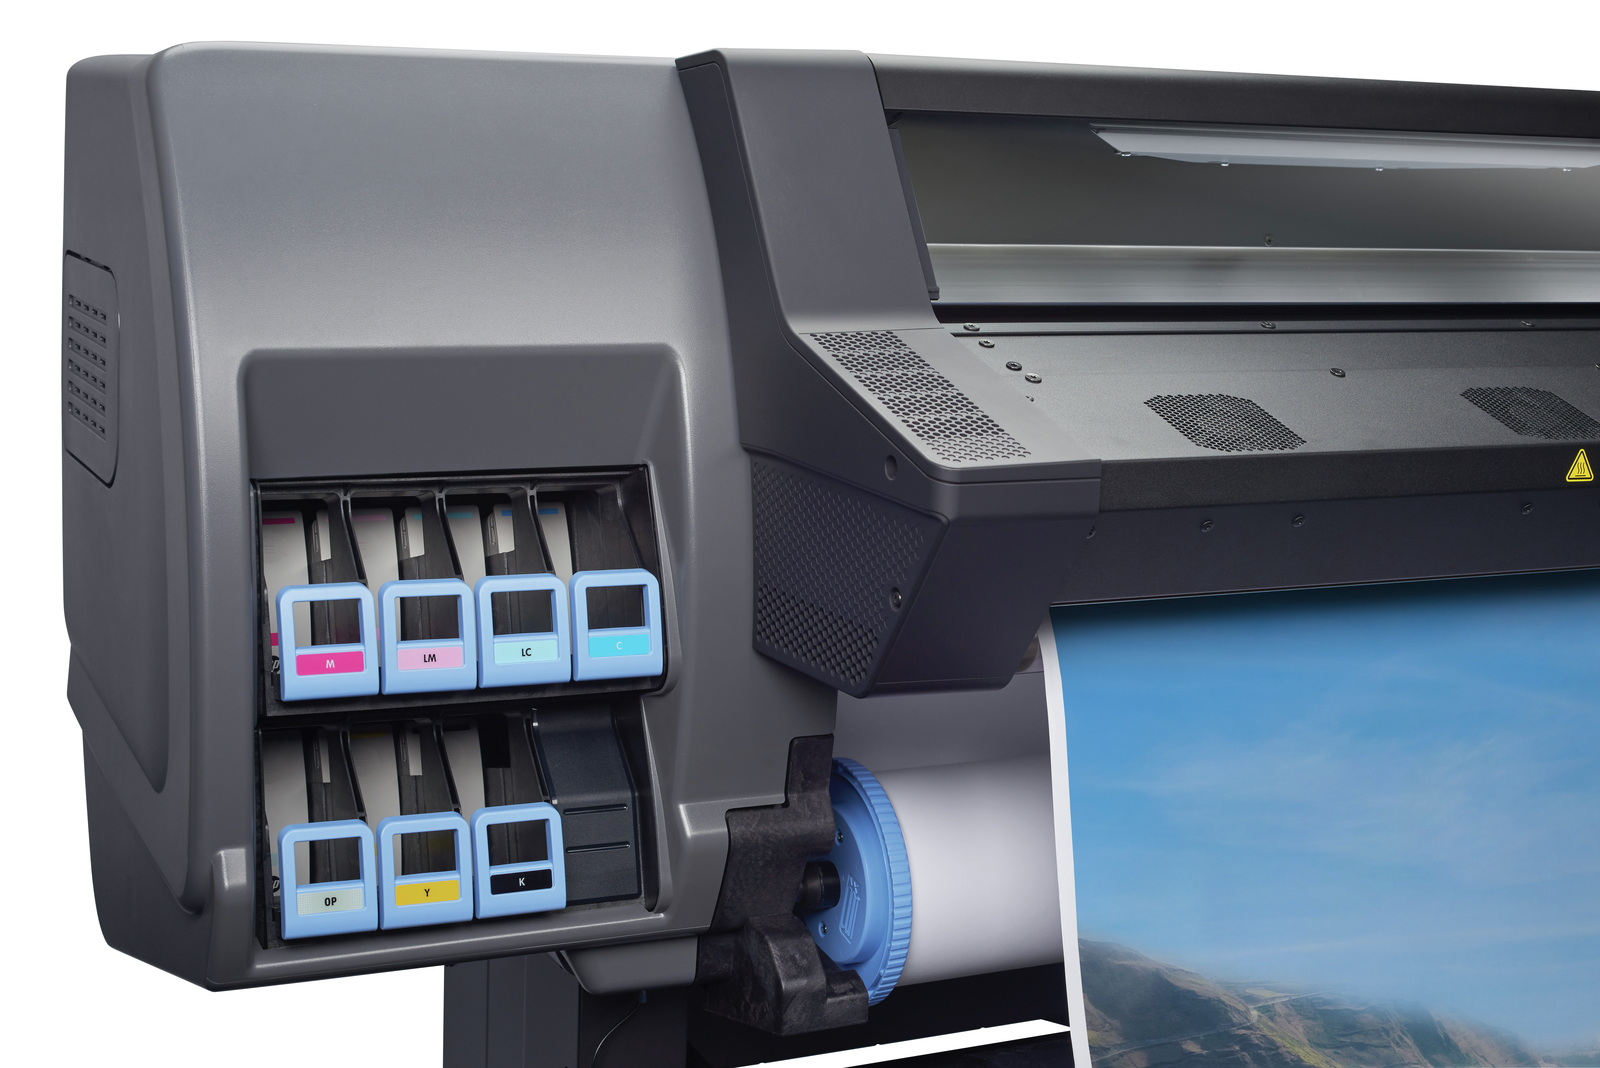 HP Latex 115 Printer